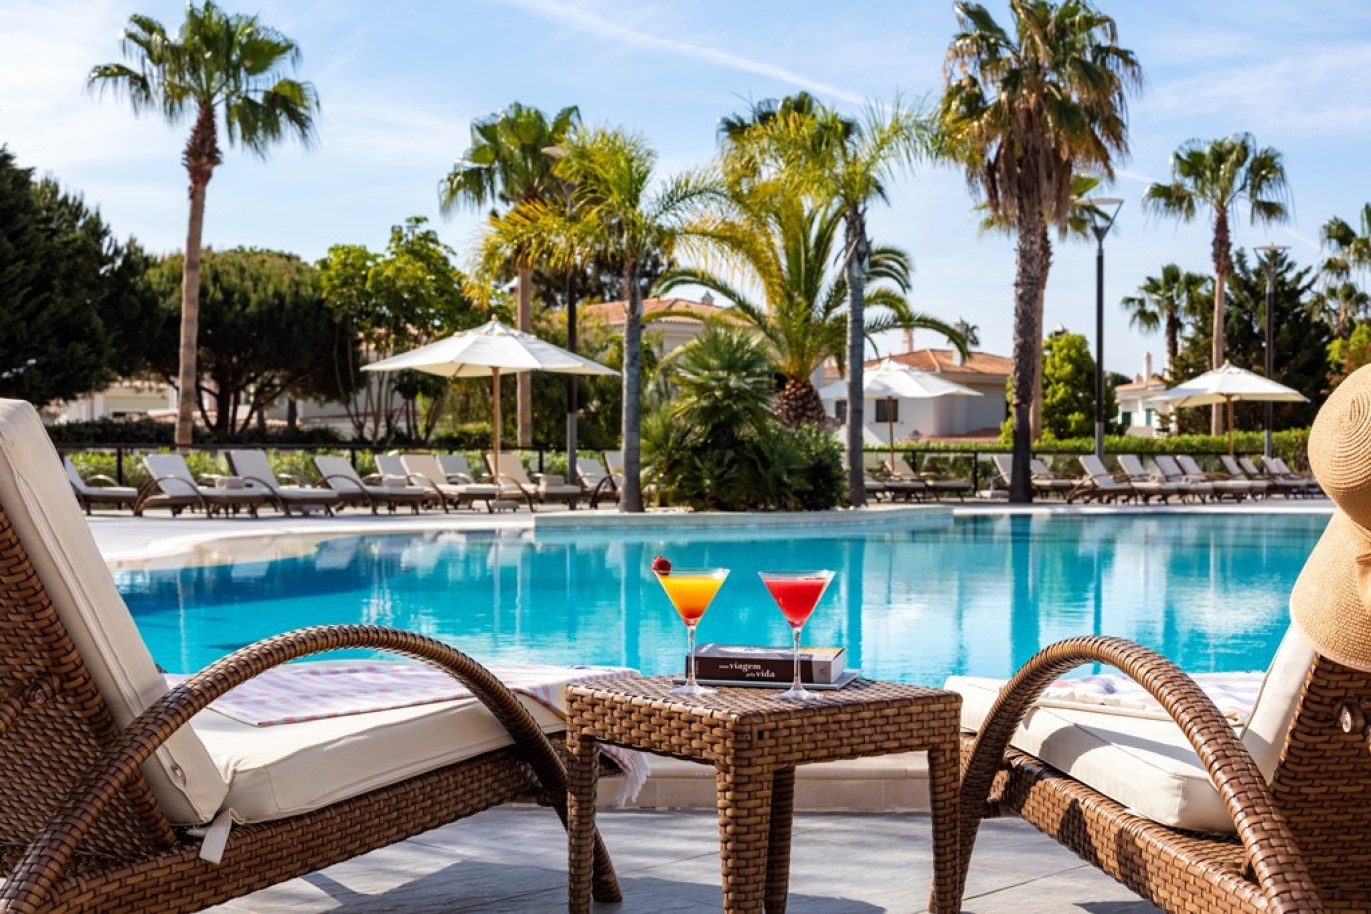 Apartamento, 2 quartos, piscina, para venda na Quinta do Lago, Algarve_262413